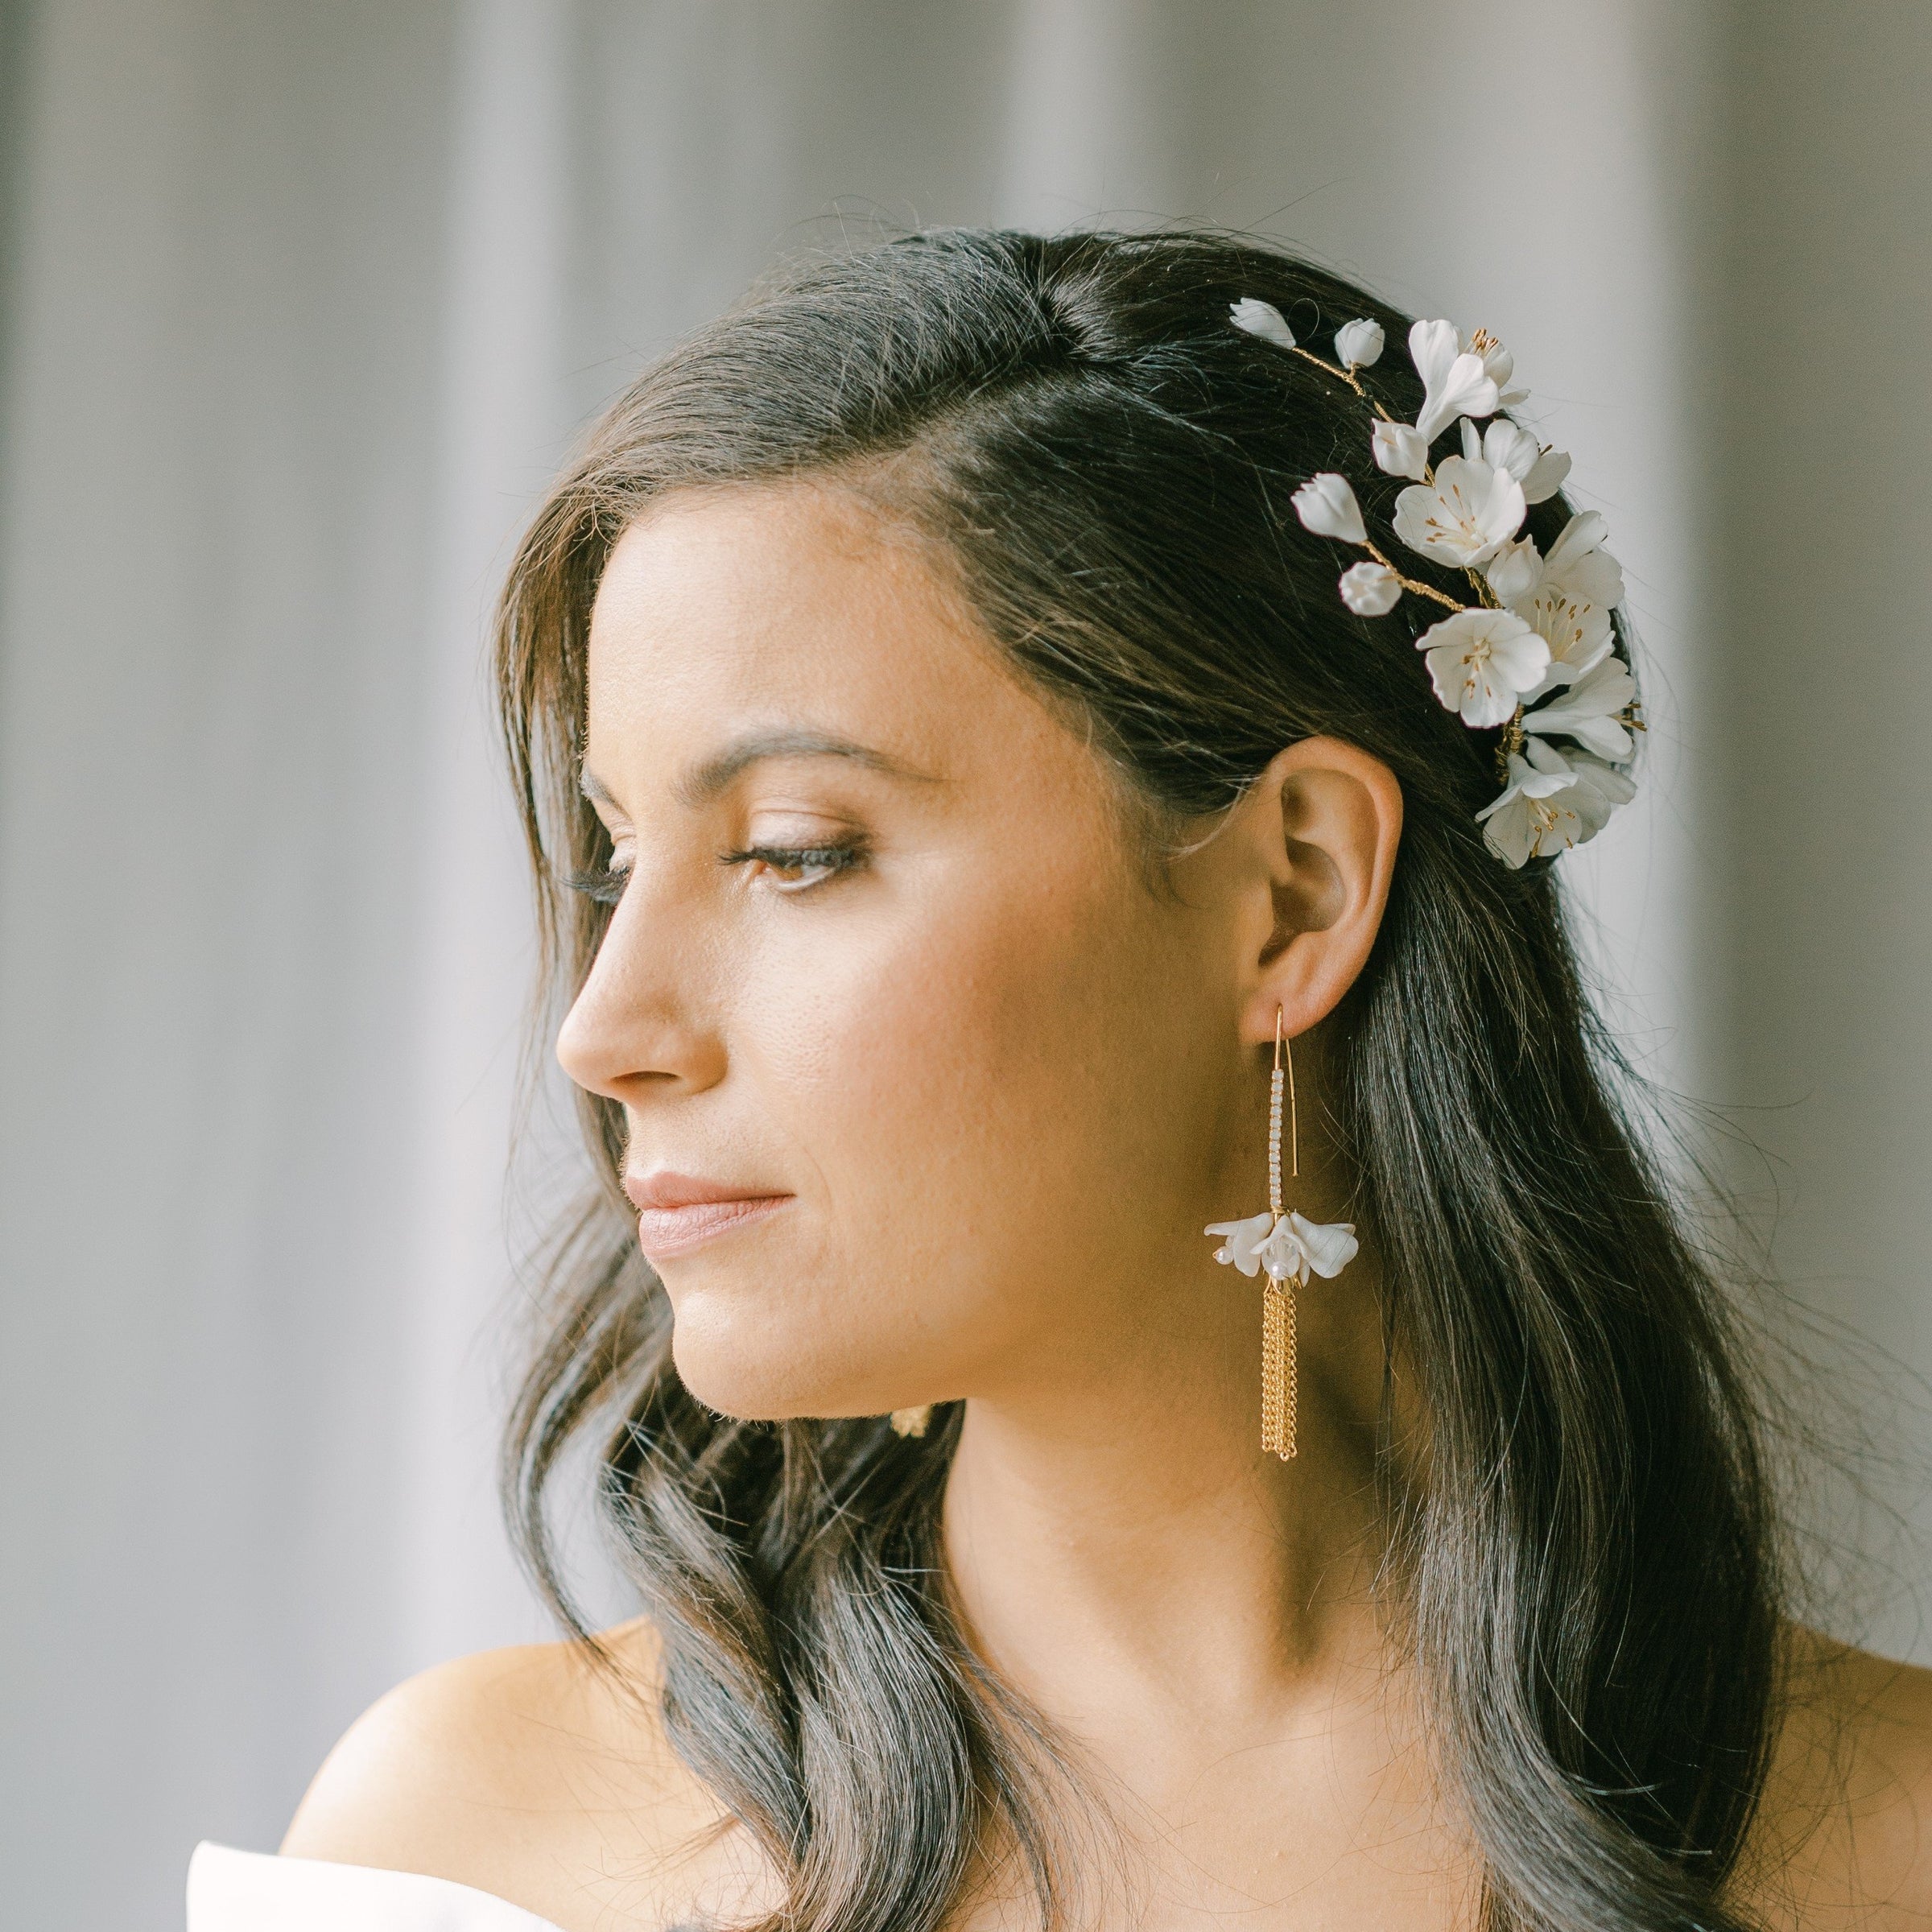 Opalite Pearl Oval Earrings – Yifat Bareket Jewelry Designs